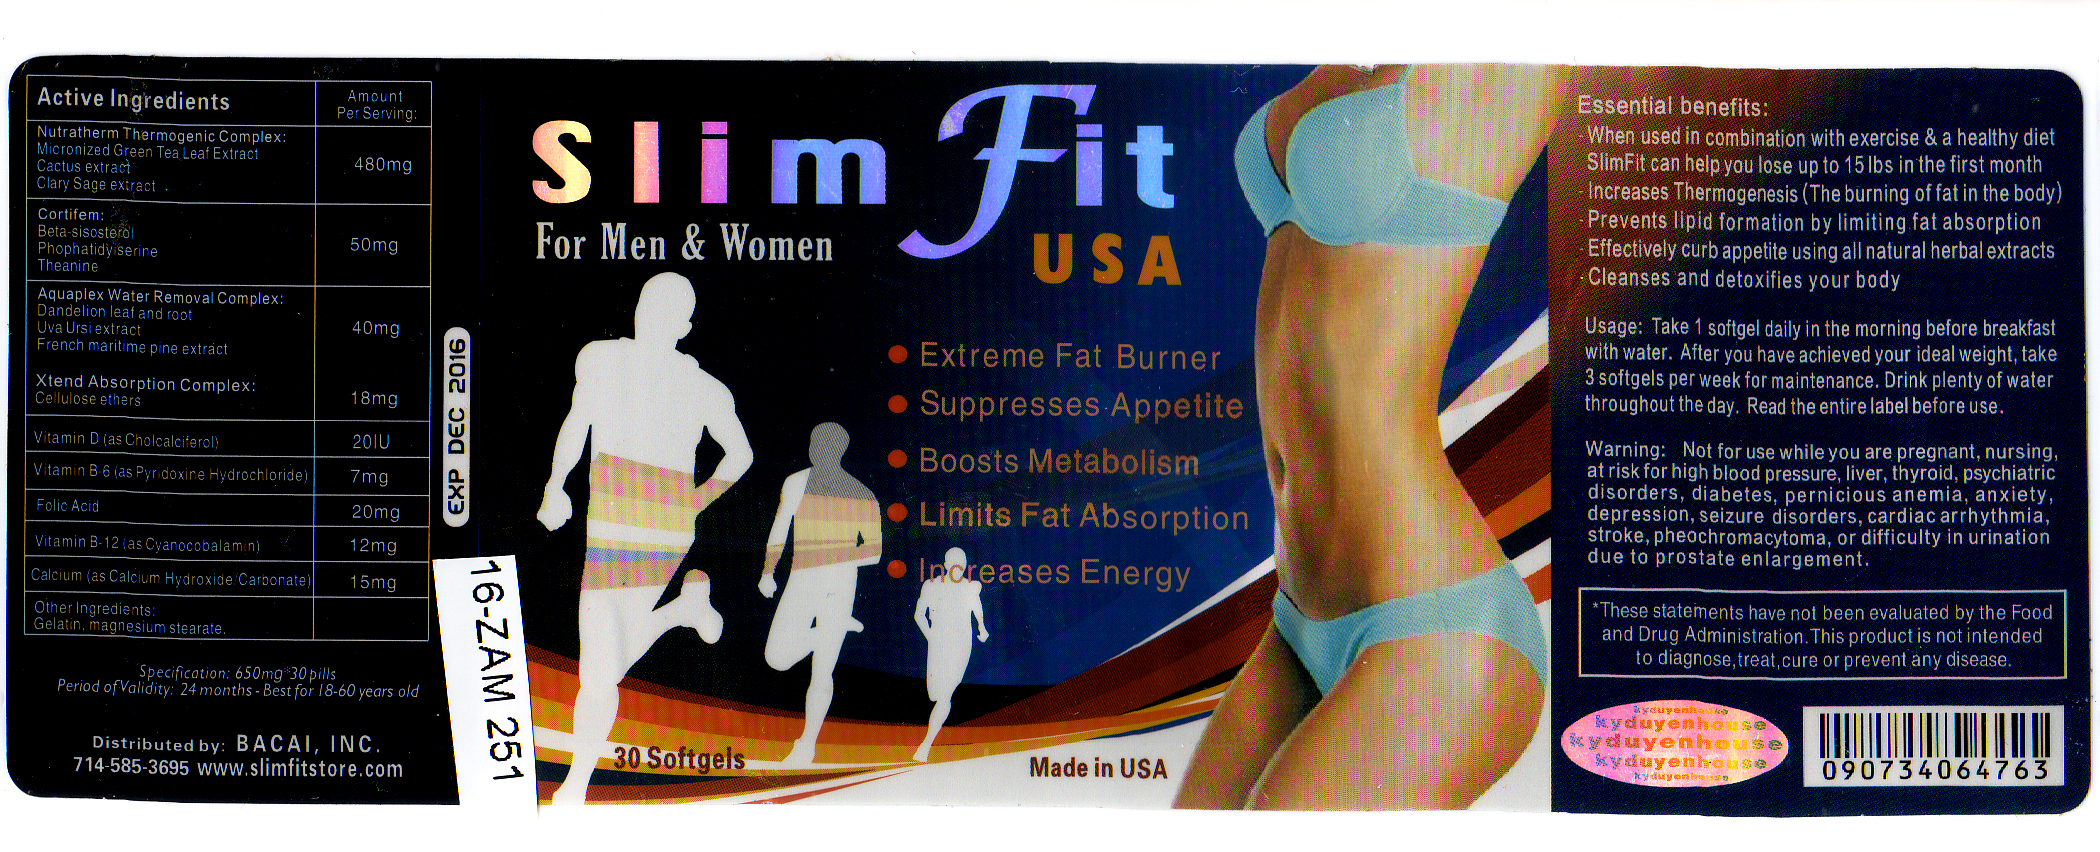 Billede af det ulovlige produkt: Slim Fit For Men & Women